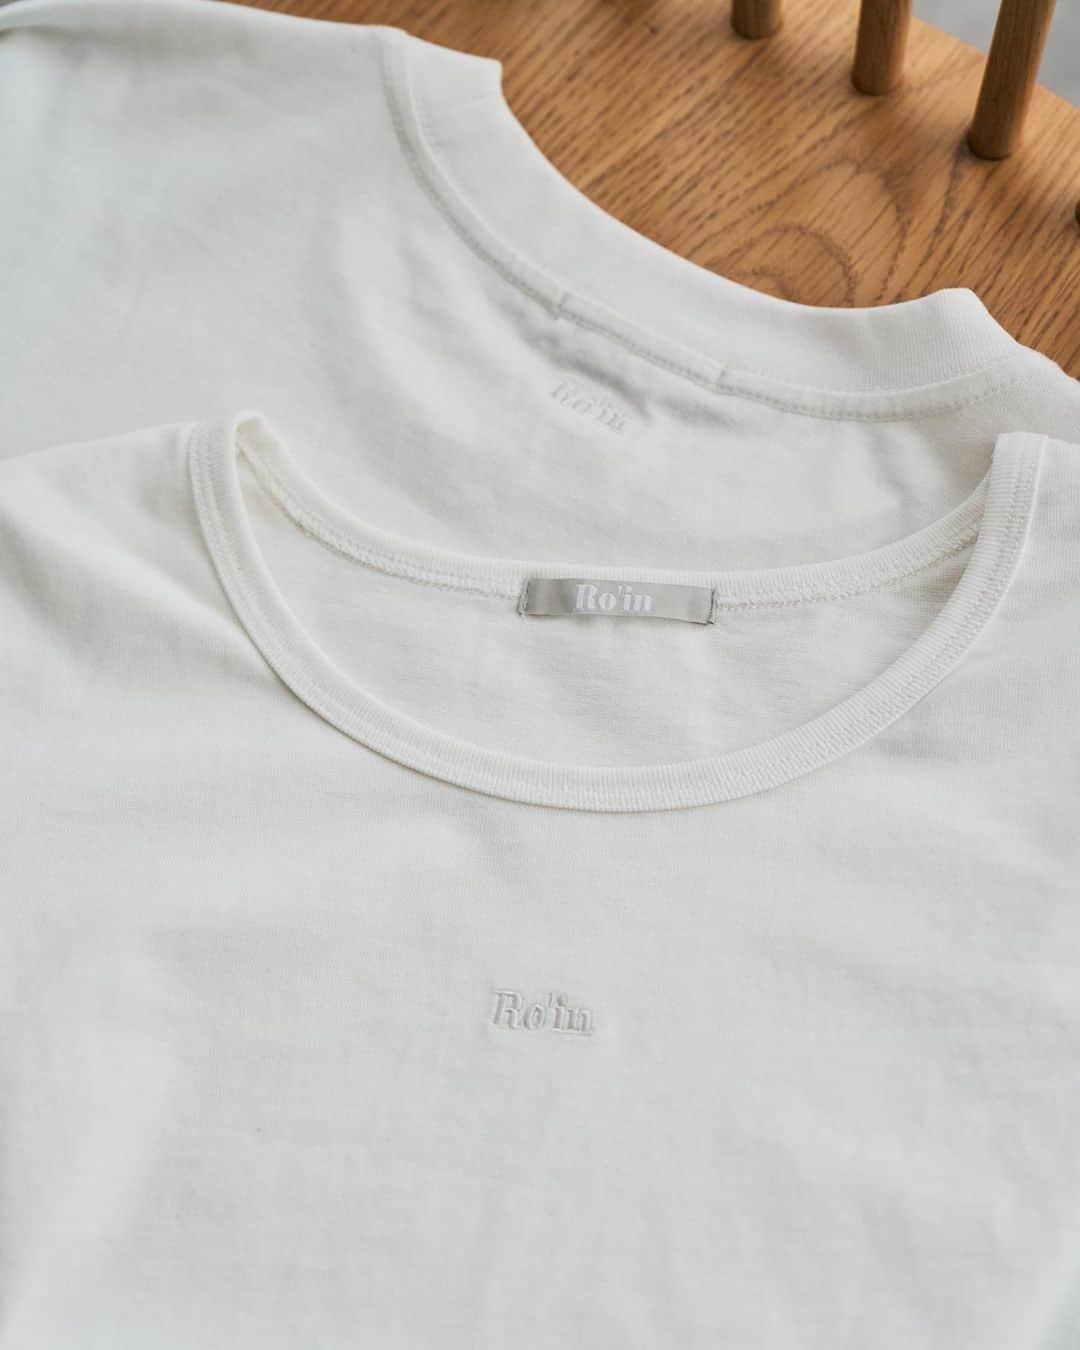 natsumiさんのインスタグラム写真 - (natsumiInstagram)「最高傑作Tシャツ作りました☺︎！！！ ㅤㅤㅤㅤㅤㅤㅤㅤㅤㅤㅤㅤㅤ @roin_official  ㅤㅤㅤㅤㅤㅤㅤㅤㅤㅤㅤㅤㅤ ずっっと自分が考えたTシャツをいちから作ってみたくて、、 たっっくさん考えて最高すぎるTシャツが2型完成しました。。✨ ㅤㅤㅤㅤㅤㅤㅤㅤㅤㅤㅤㅤㅤ ㅤㅤㅤㅤㅤㅤㅤㅤㅤㅤㅤㅤㅤ ひとつは、ユニセックス男女兼用問わず 着用して頂けるTシャツで、 少し大きめにできています！ ㅤㅤㅤㅤㅤㅤㅤㅤㅤㅤㅤㅤㅤ Ro'inの刺繍は後ろの首元にあるので ファッションの邪魔をせず 色んなボトムが合わせられます！ ㅤㅤㅤㅤㅤㅤㅤㅤㅤㅤㅤㅤㅤ 女の子には少し大きめに着てワンピース風に ˎˊ˗ カジュアルに着たい場合は デニムにインをしてあげてもかわいい！ ㅤㅤㅤㅤㅤㅤㅤㅤㅤㅤㅤㅤㅤ シンプルに着られるのが本当に最高です。 ㅤㅤㅤㅤㅤㅤㅤㅤㅤㅤㅤㅤㅤ ㅤㅤㅤㅤㅤㅤㅤㅤㅤㅤㅤㅤㅤもうひとつの方は、 レディースの方に是非とも着てほしいTシャツです。 ㅤㅤㅤㅤㅤㅤㅤㅤㅤㅤㅤㅤㅤ 丈、袖の長さ、ネックのデザイン、 刺繍の位置、かなりこだわって作りました♡ ㅤㅤㅤㅤㅤㅤㅤㅤㅤㅤㅤㅤㅤ ほっっっとうに可愛いです。 ボトムがなんでも合わせられ、 ワンピースやキャミワンピも合っちゃうのが魅力的です.ᐟ‪.ᐟ  ㅤㅤㅤㅤㅤㅤㅤㅤㅤㅤㅤㅤㅤ クロップド丈でネックの部分も少し広めのデザインにしたので とっても着痩せしてみせてくれるのが 最大のポイントです🤭 ㅤㅤㅤㅤㅤㅤㅤㅤㅤㅤㅤㅤㅤ レディース用はRo'inの刺繍が前の真ん中にあります☺︎ かわいいです。本当に。（しつこいけど本当にかわいい。） ㅤㅤㅤㅤㅤㅤㅤㅤㅤㅤㅤㅤㅤ モデルさんは身長が167cmで、わたしが161cmです！！ よかったら参考にしてください！！ ㅤㅤㅤㅤㅤㅤㅤㅤㅤㅤㅤㅤㅤ ピチTすぎず、大きすぎずの最高のサイズです♩ ㅤㅤㅤㅤㅤㅤㅤㅤㅤㅤㅤㅤㅤ ㅤㅤㅤㅤㅤㅤㅤㅤㅤㅤㅤㅤㅤ そして、生地や色味にもすごくこだわりました！ 生地も硬すぎず、柔らかすぎで シワができにくいし、何回着てもよれにくいです！ 色味も真っ白すぎずに少し優しい色味が入っており どんなコーデにも合います！ ㅤㅤㅤㅤㅤㅤㅤㅤㅤㅤㅤㅤㅤ 語れば何時間もか勝ってしまうのですが いまわたしが伝えたいことを書きました☺︎ ㅤㅤㅤㅤㅤㅤㅤㅤㅤㅤㅤㅤㅤ この夏大活躍するに間違いなしですので ぜひ、6月24日Ro'inのオンラインショップで ぜひゲットしてください！！ ㅤㅤㅤㅤㅤㅤㅤㅤㅤㅤㅤㅤㅤ 最後まで読んでくださってありがとうございます！ ㅤㅤㅤㅤㅤㅤㅤㅤㅤㅤㅤㅤㅤ 発売まで後少しお待ちください🙇🏻‍♀️🤍 ㅤㅤㅤㅤㅤㅤㅤㅤㅤㅤㅤㅤㅤ ㅤㅤㅤㅤㅤㅤㅤㅤㅤㅤㅤㅤㅤ #roin #ロワン #ユニセックス #tシャツコーデ #tシャツコーデ」6月18日 21時37分 - iskw_ntm